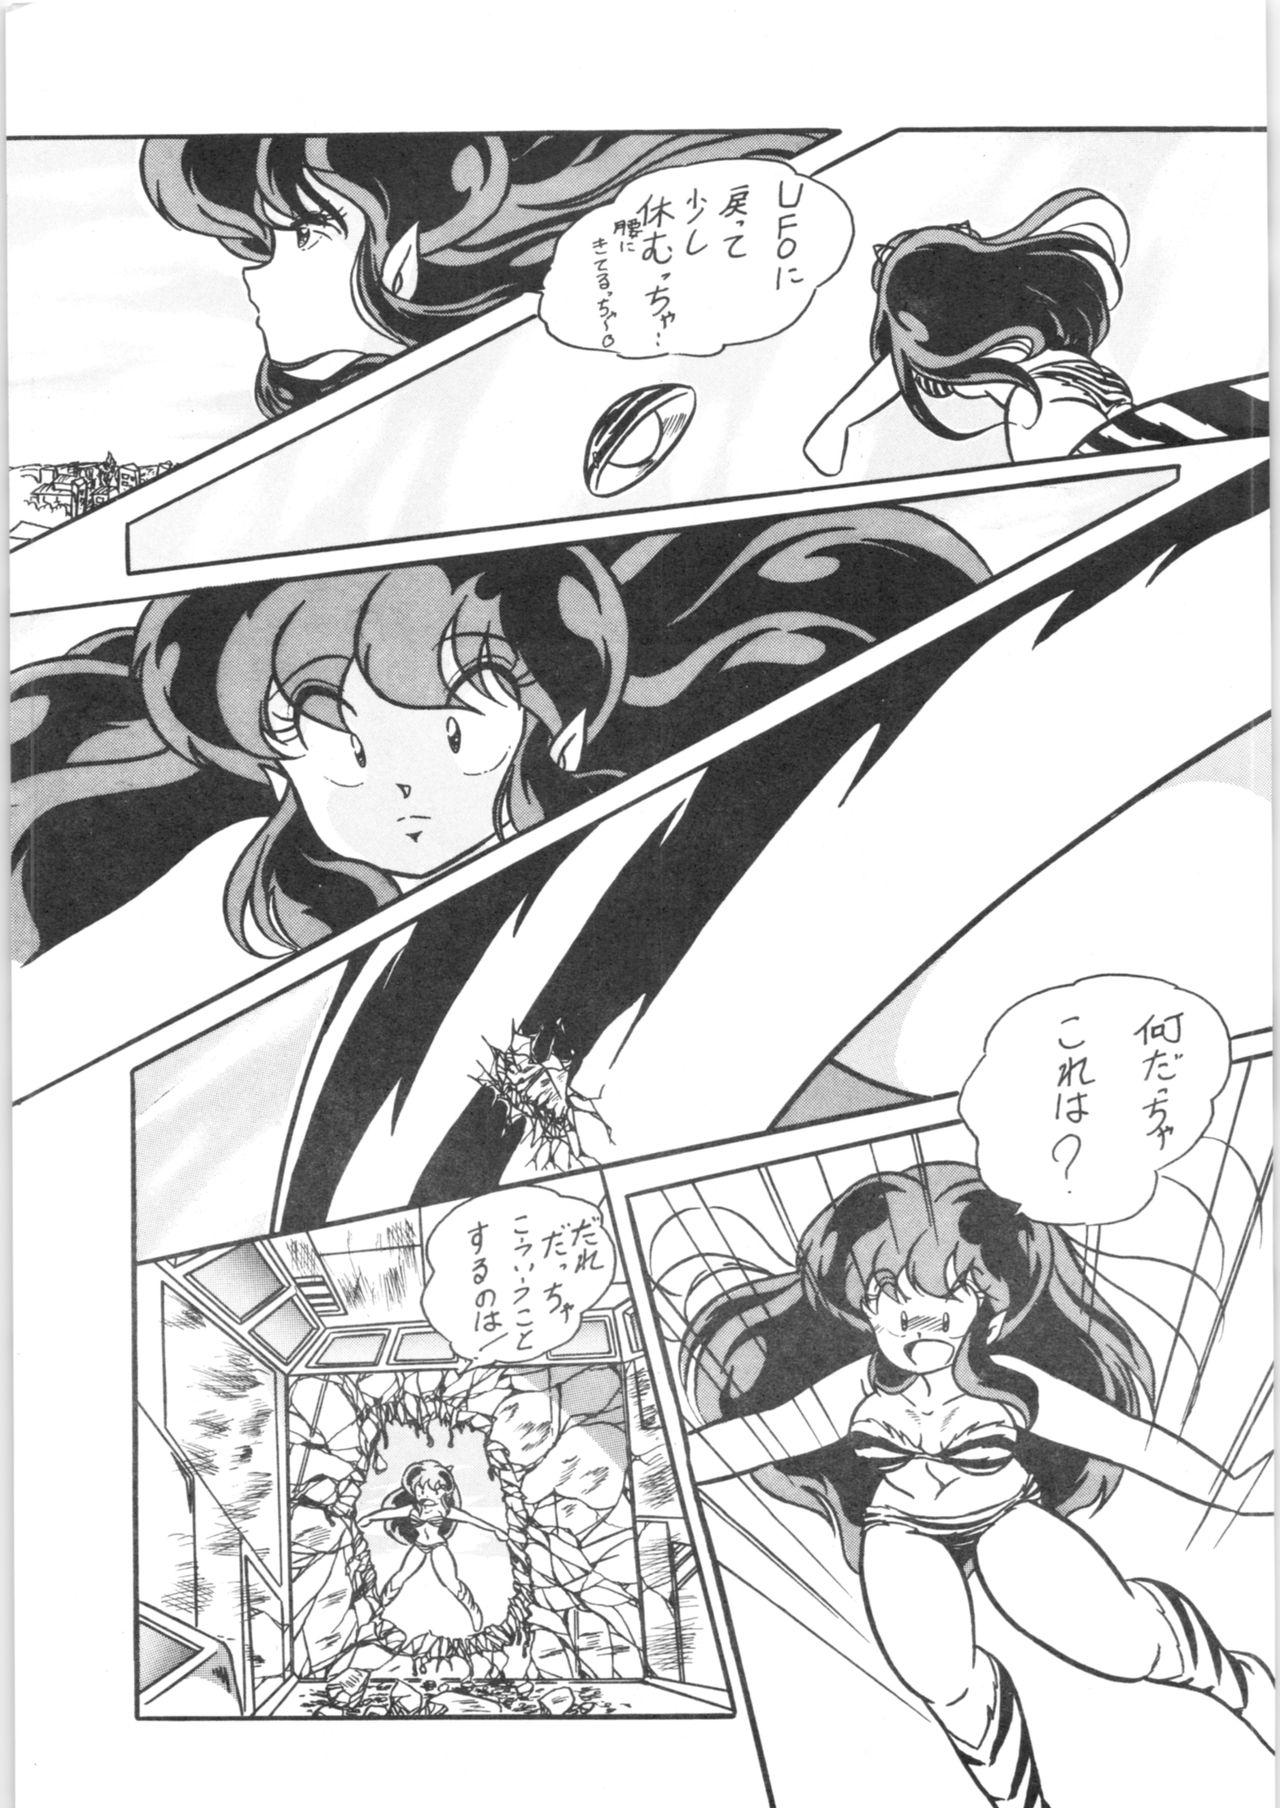 Curious C-COMPANY SPECIAL STAGE 5 - Ranma 12 Urusei yatsura Tia - Page 6